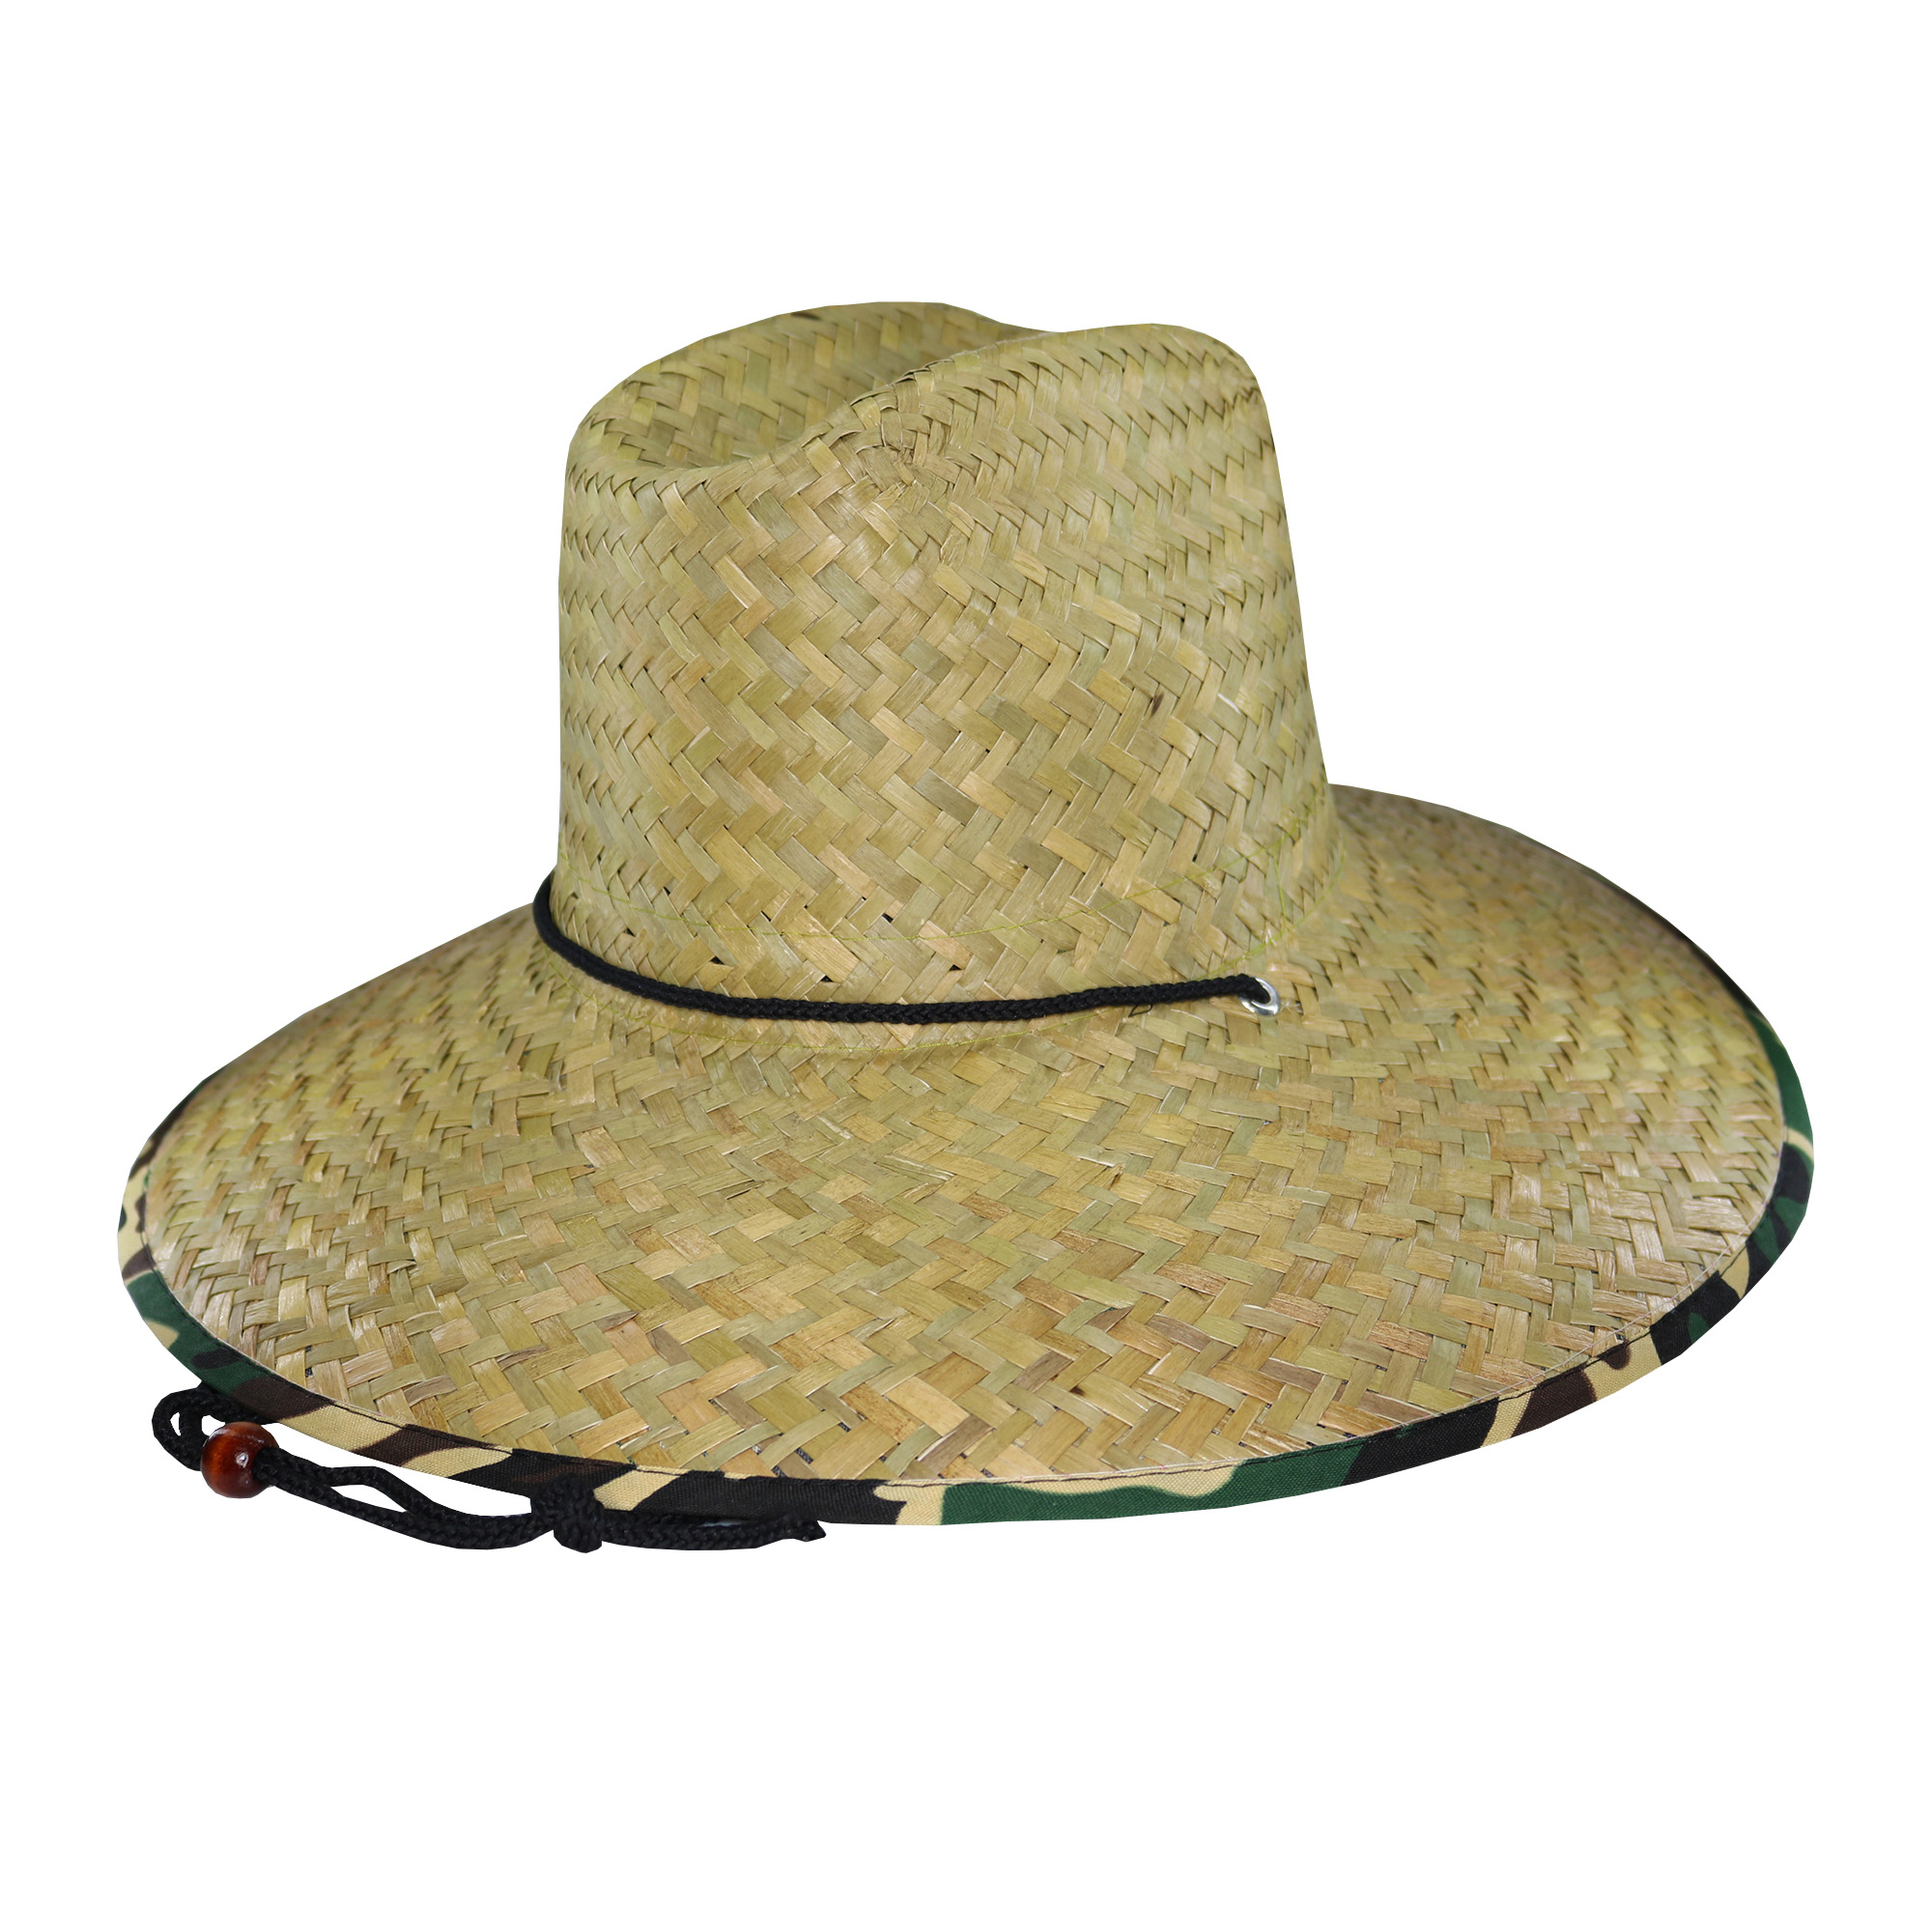 Sombrero guardavidas de paja ala estampado camuflaje con cordón.